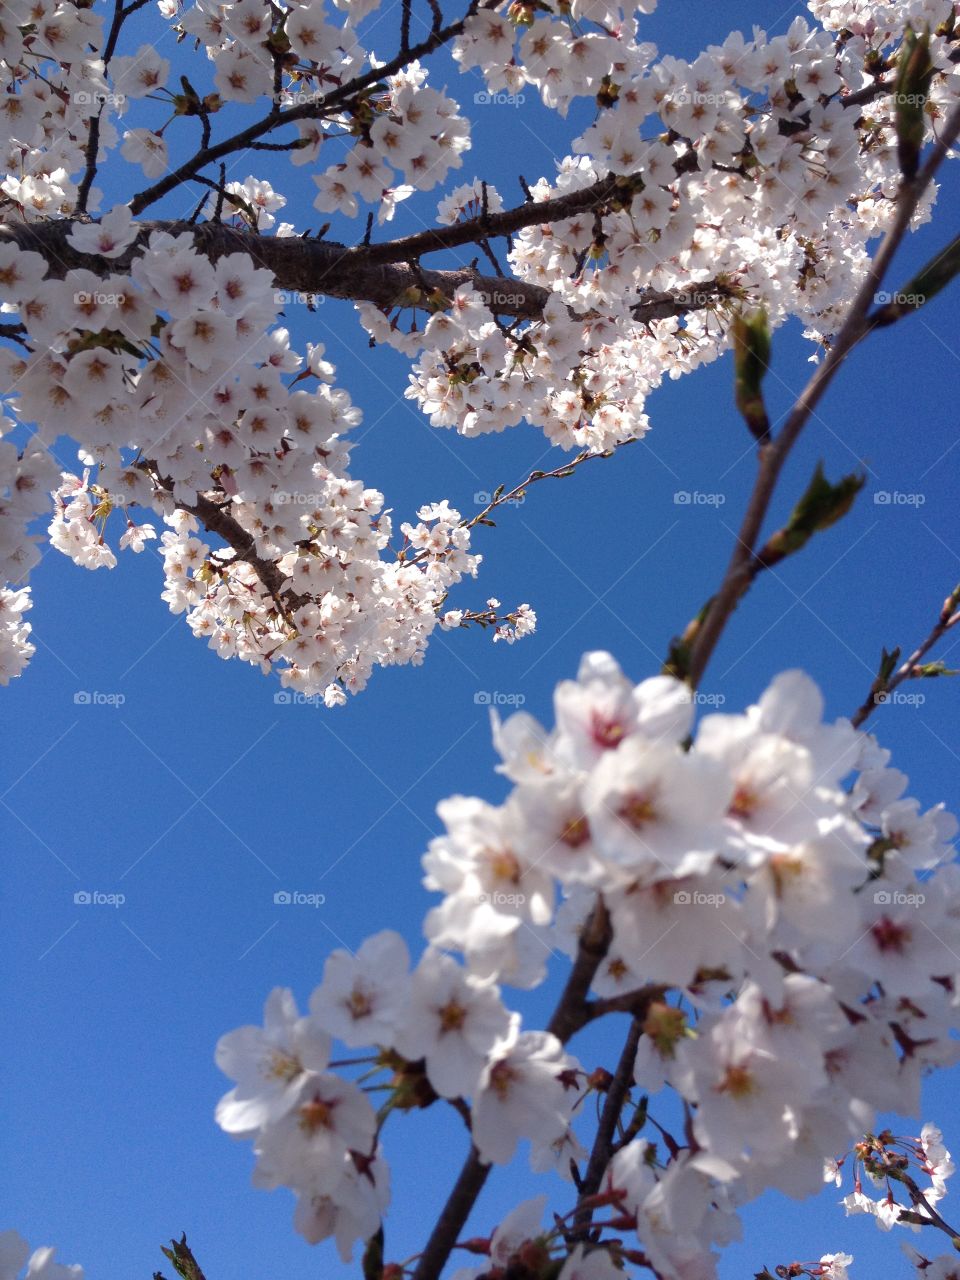 Cherry blossom
